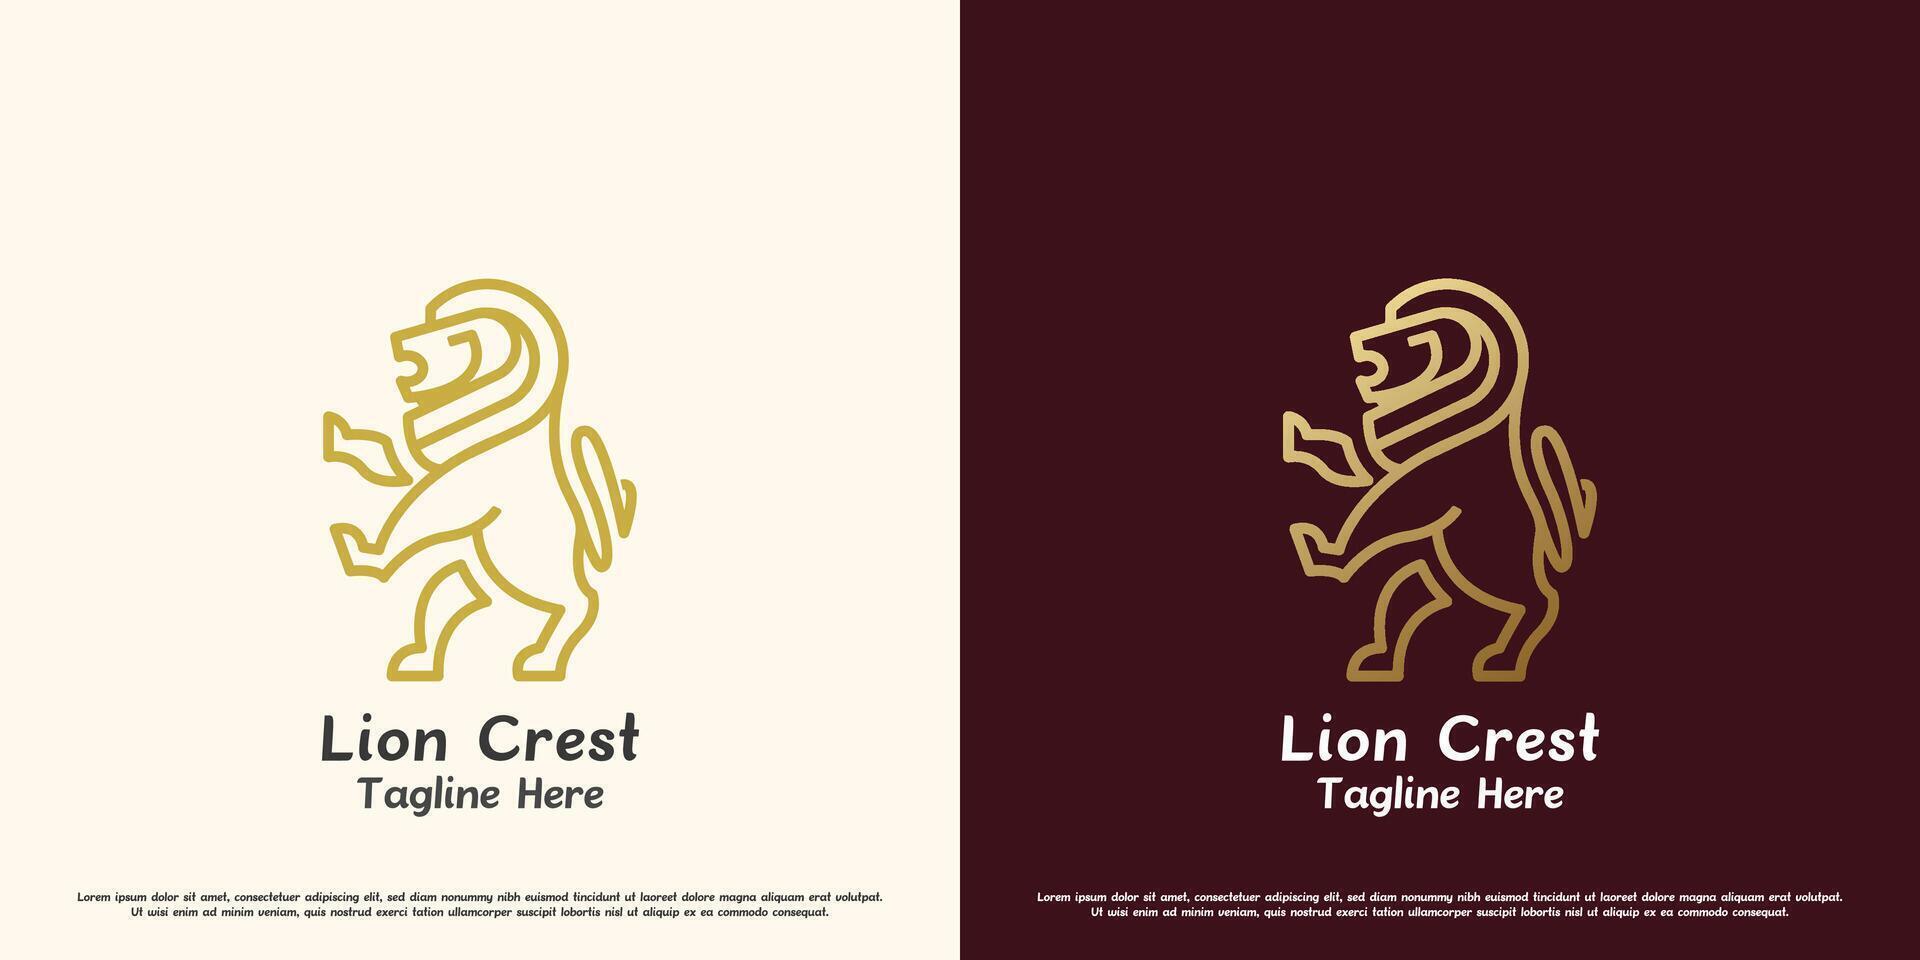 león cresta logo diseño ilustración. silueta de un león cola en pie rugido salvaje animal Rey de el selva depredador colmillos garras corajudo. minimalista elegante lujo orgullo honor sencillo icono símbolo. vector